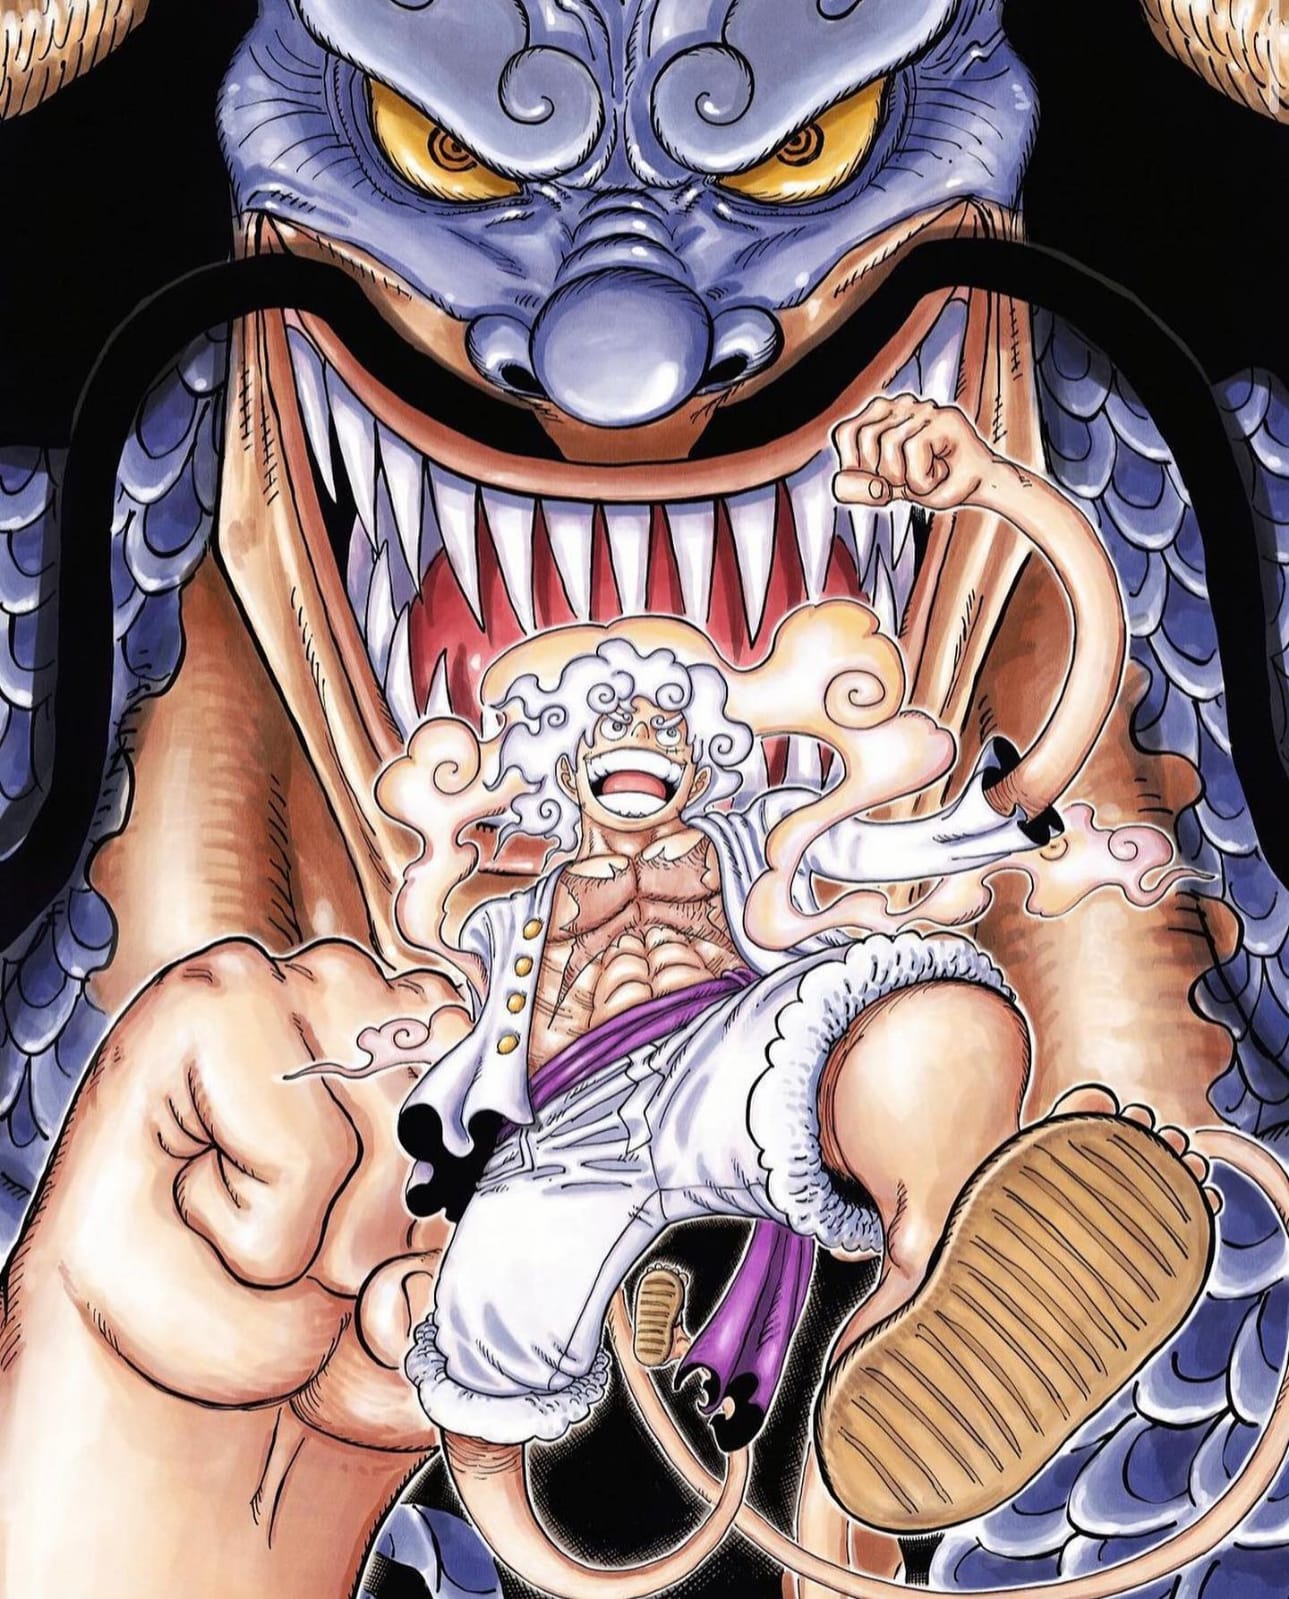 Kekuatan Sun God Nika Muncul Di Anime One Piece, Kematian Kaido Sudah Lama Direncanakan Oda